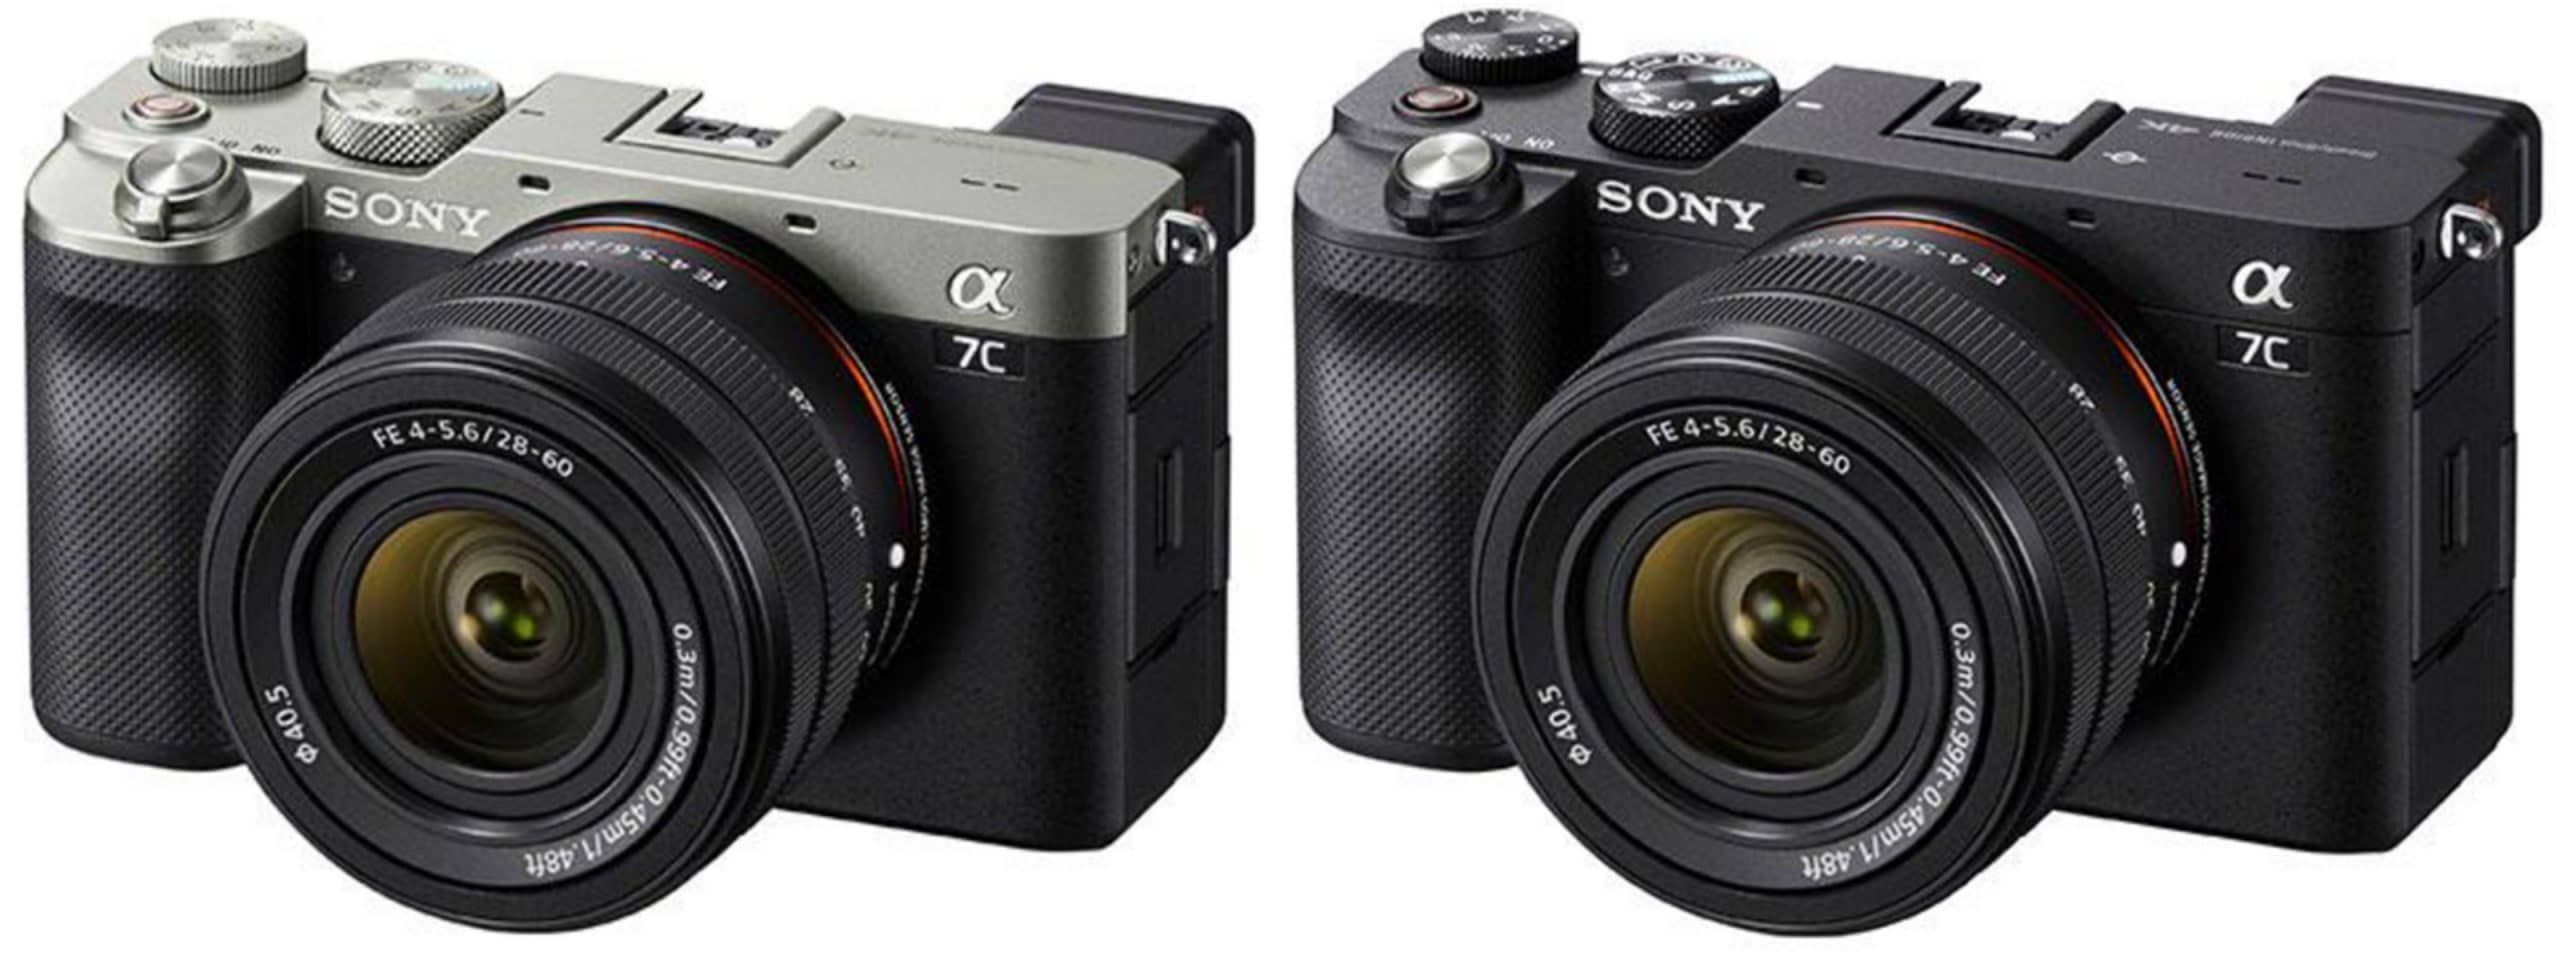 Xuất hiện những bức ảnh rò rỉ đầu tiên của máy ảnh Sony A7c